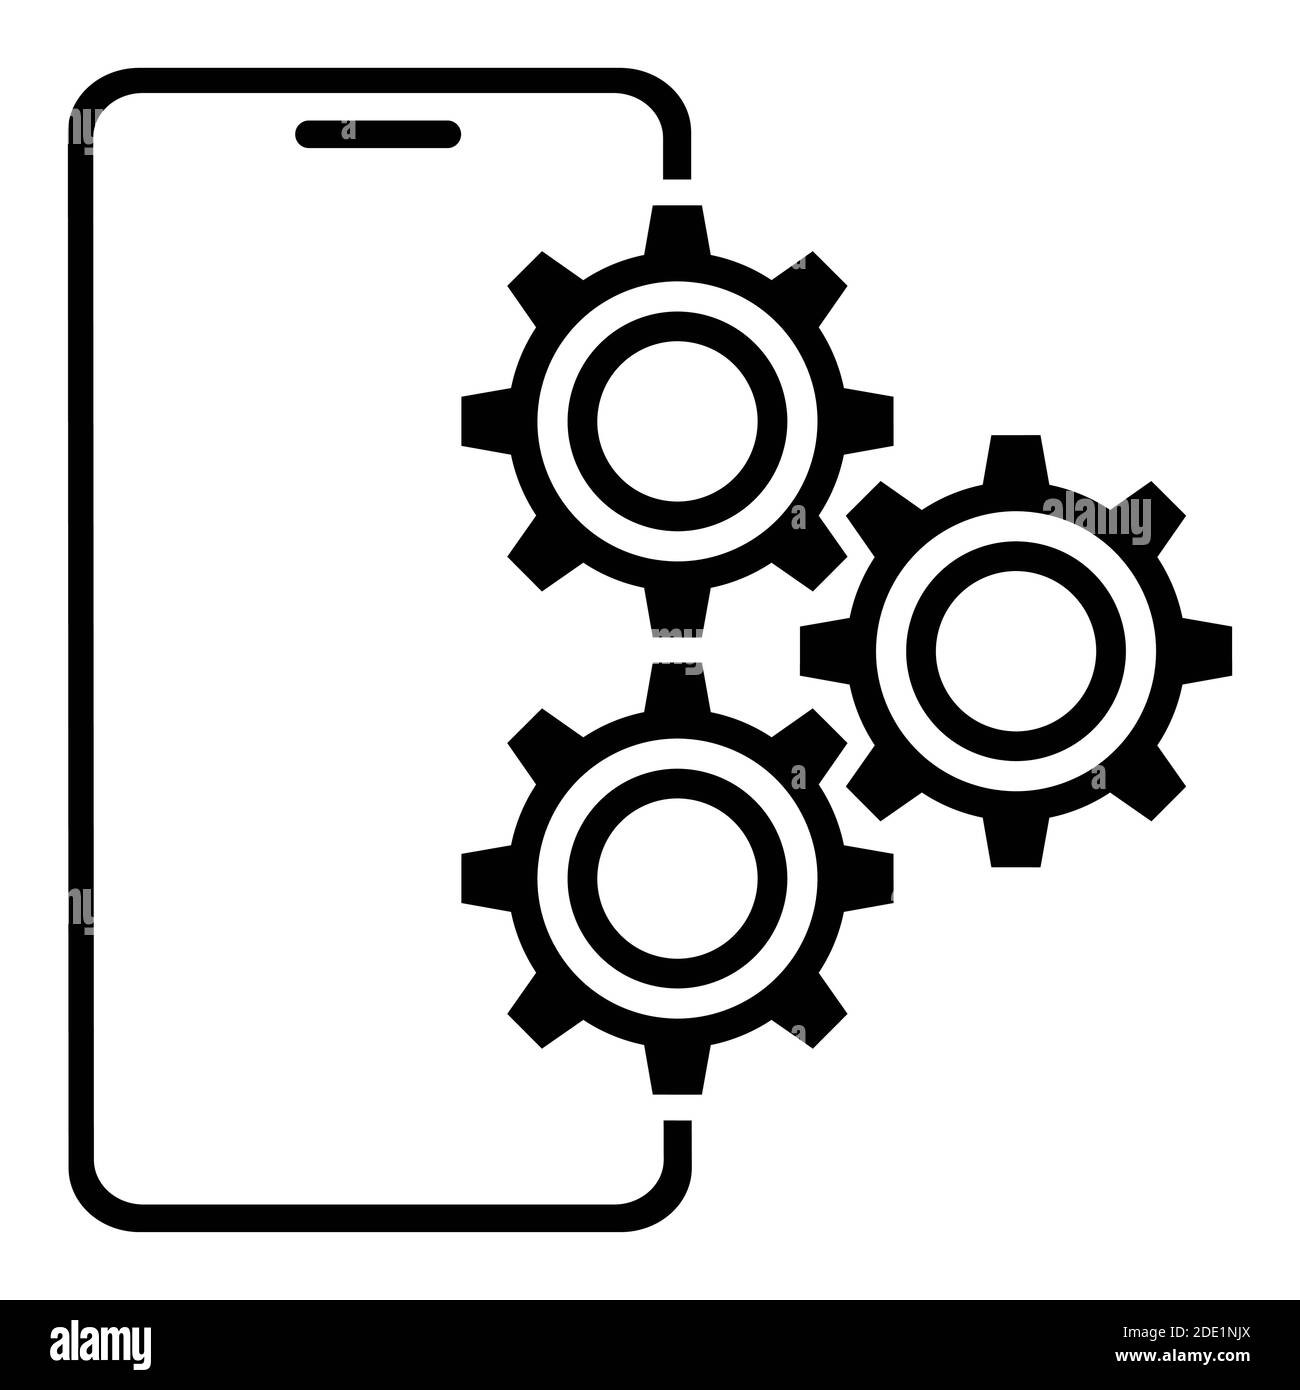 Icône smartphone avec Gears. Réglage et réparation des composants électroniques. Vecteur sur fond blanc Illustration de Vecteur